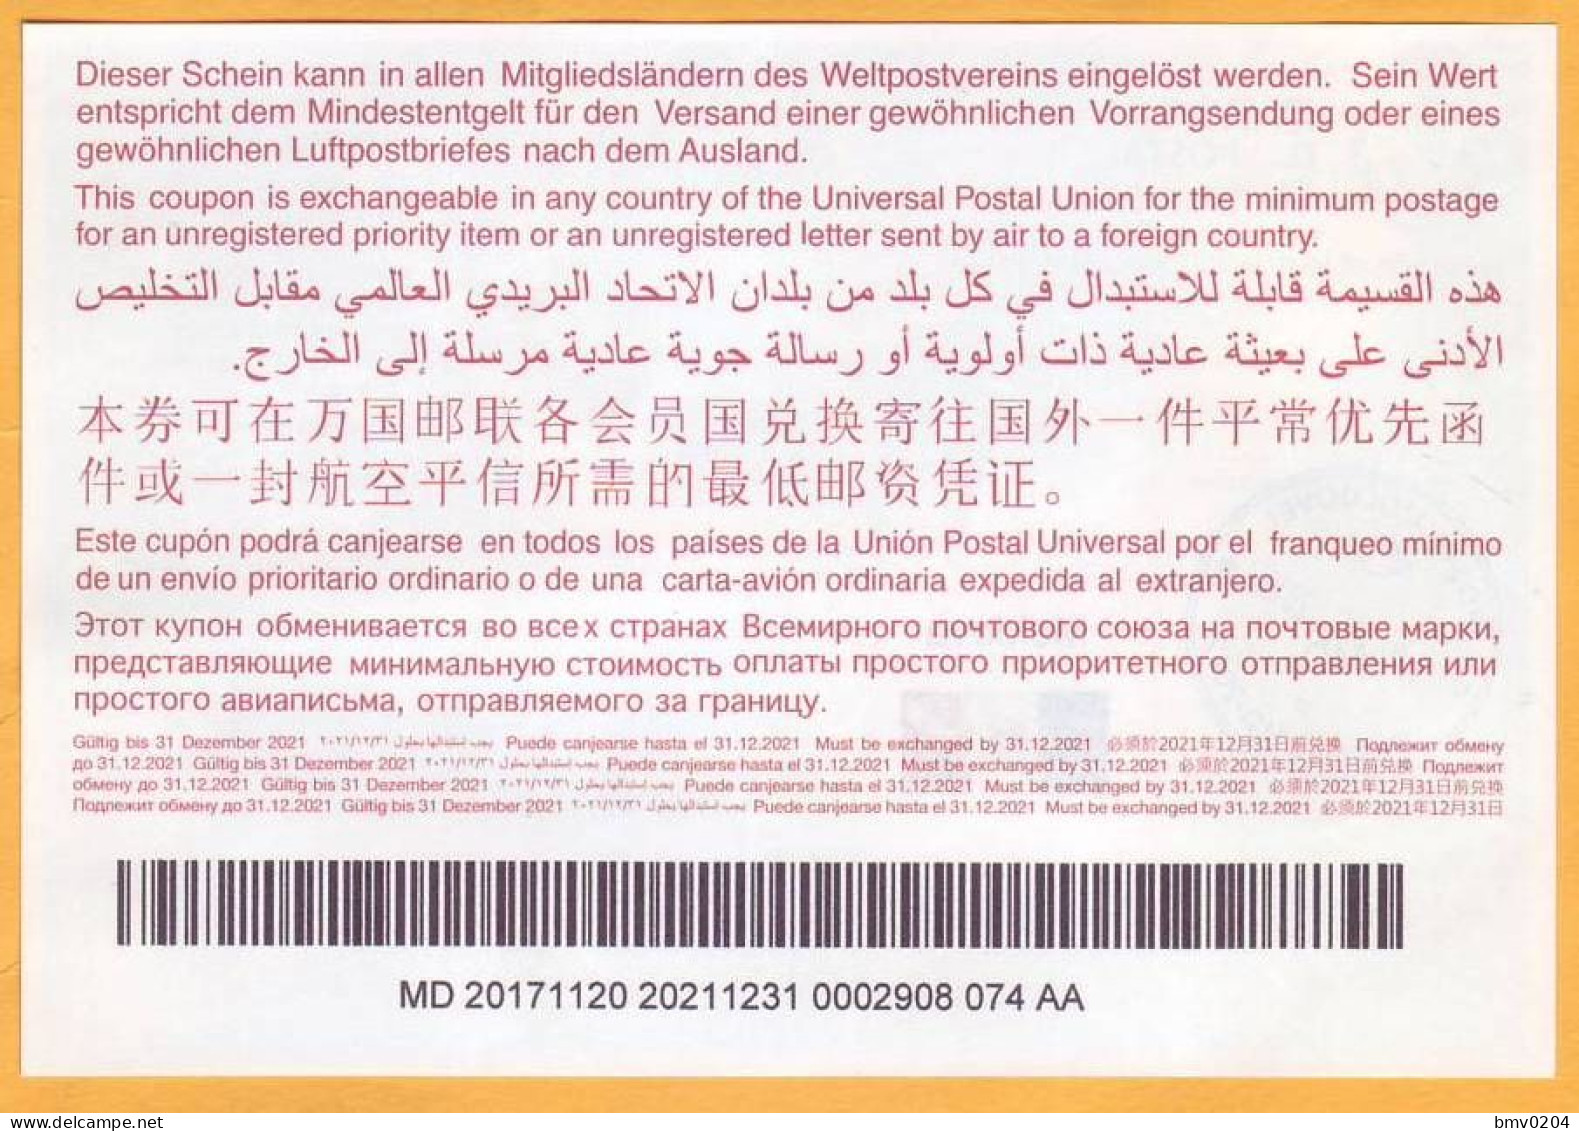 2017  Moldova Moldavie Moldau  Universal Postal Union. International Return Coupon. 0002908 074 AA - UPU (Union Postale Universelle)